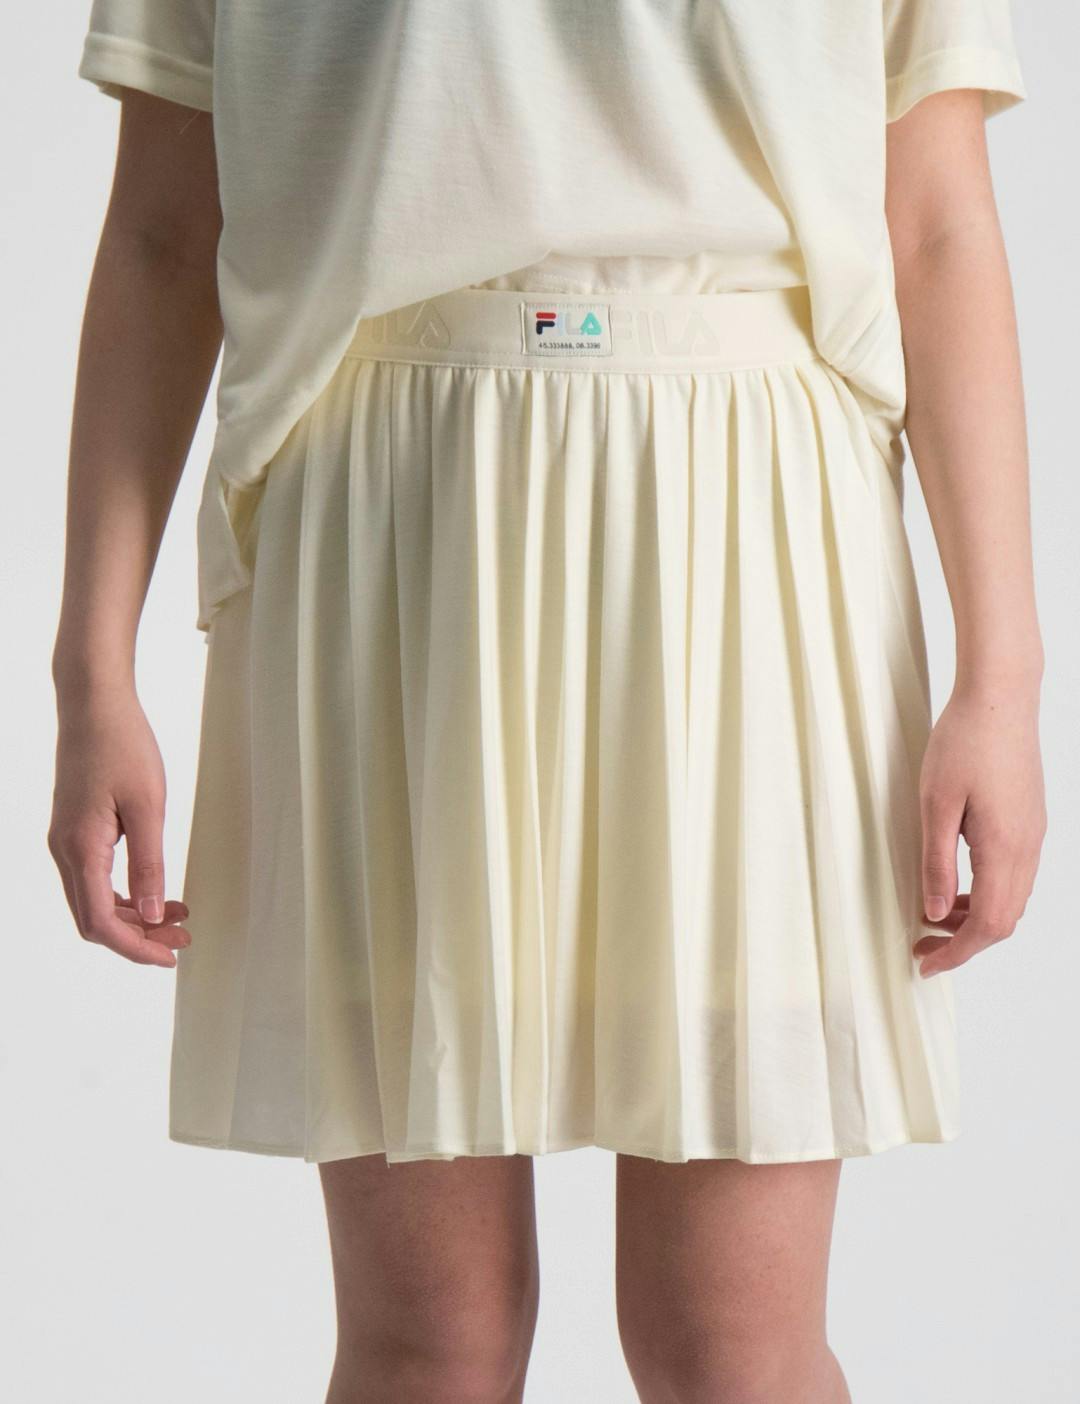 TIELEN pleated skirt